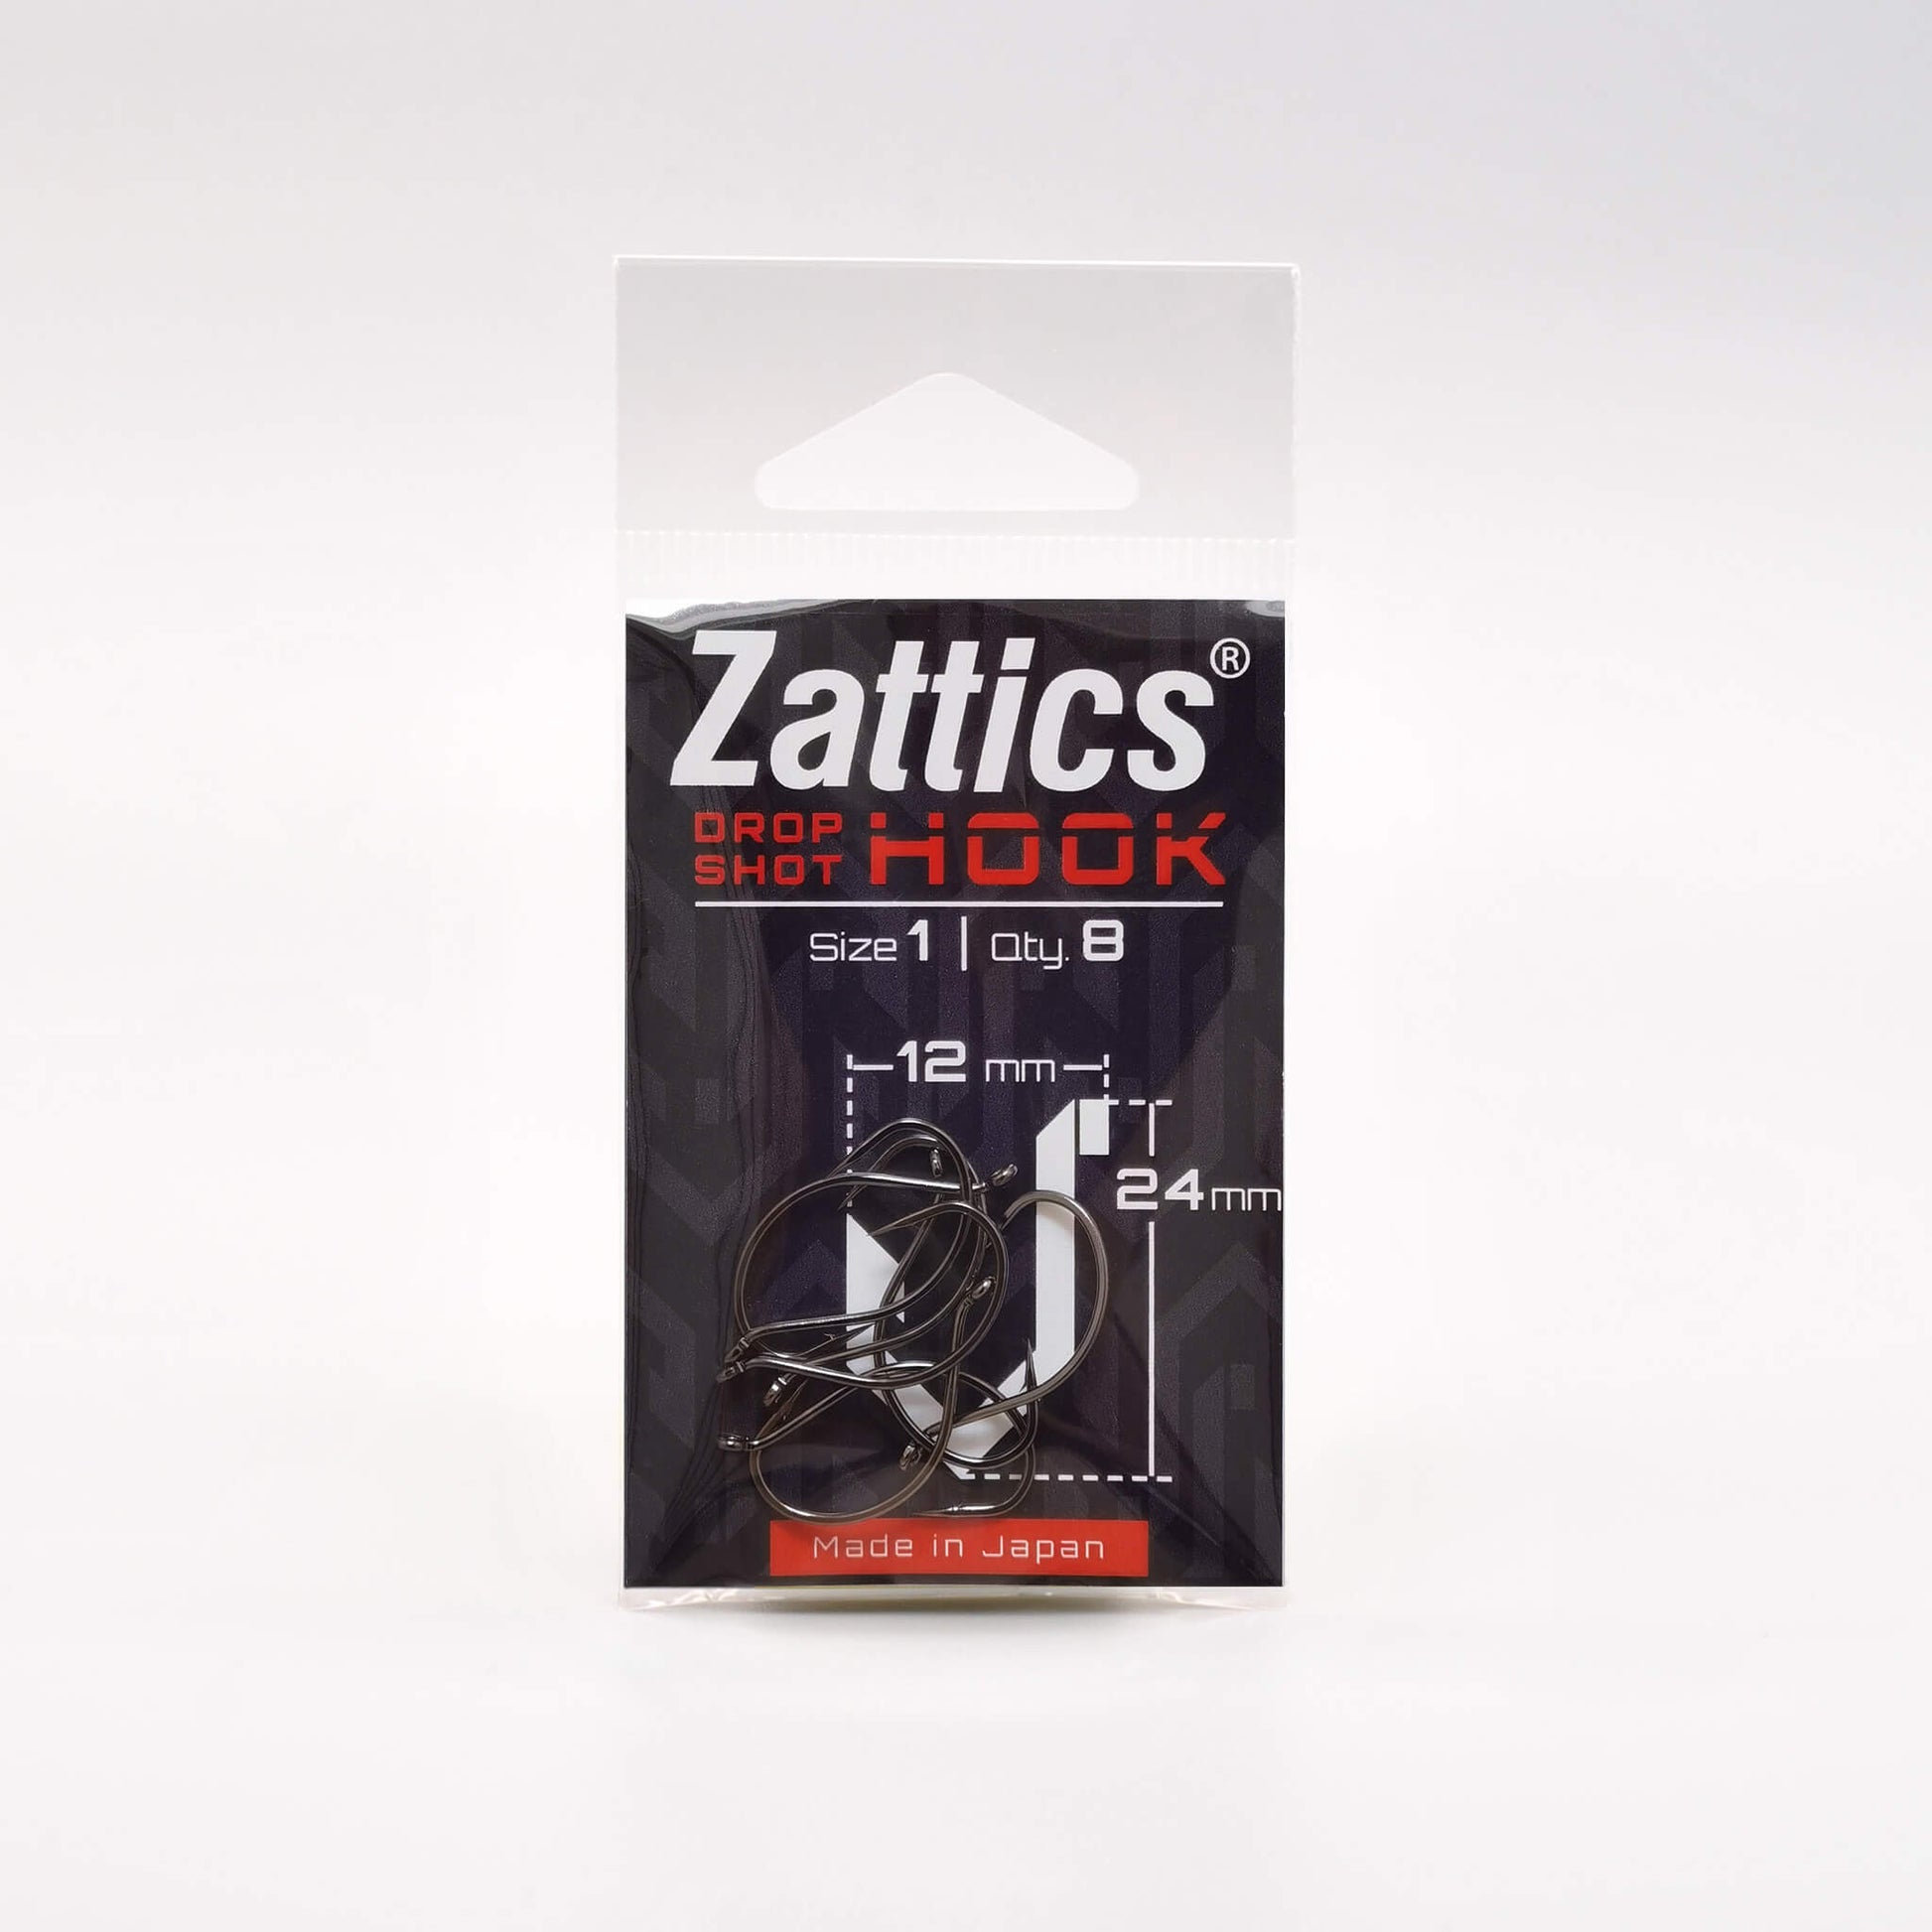 Zattics Drop Shot Haken made in Japan für das Zanderangeln kaufen